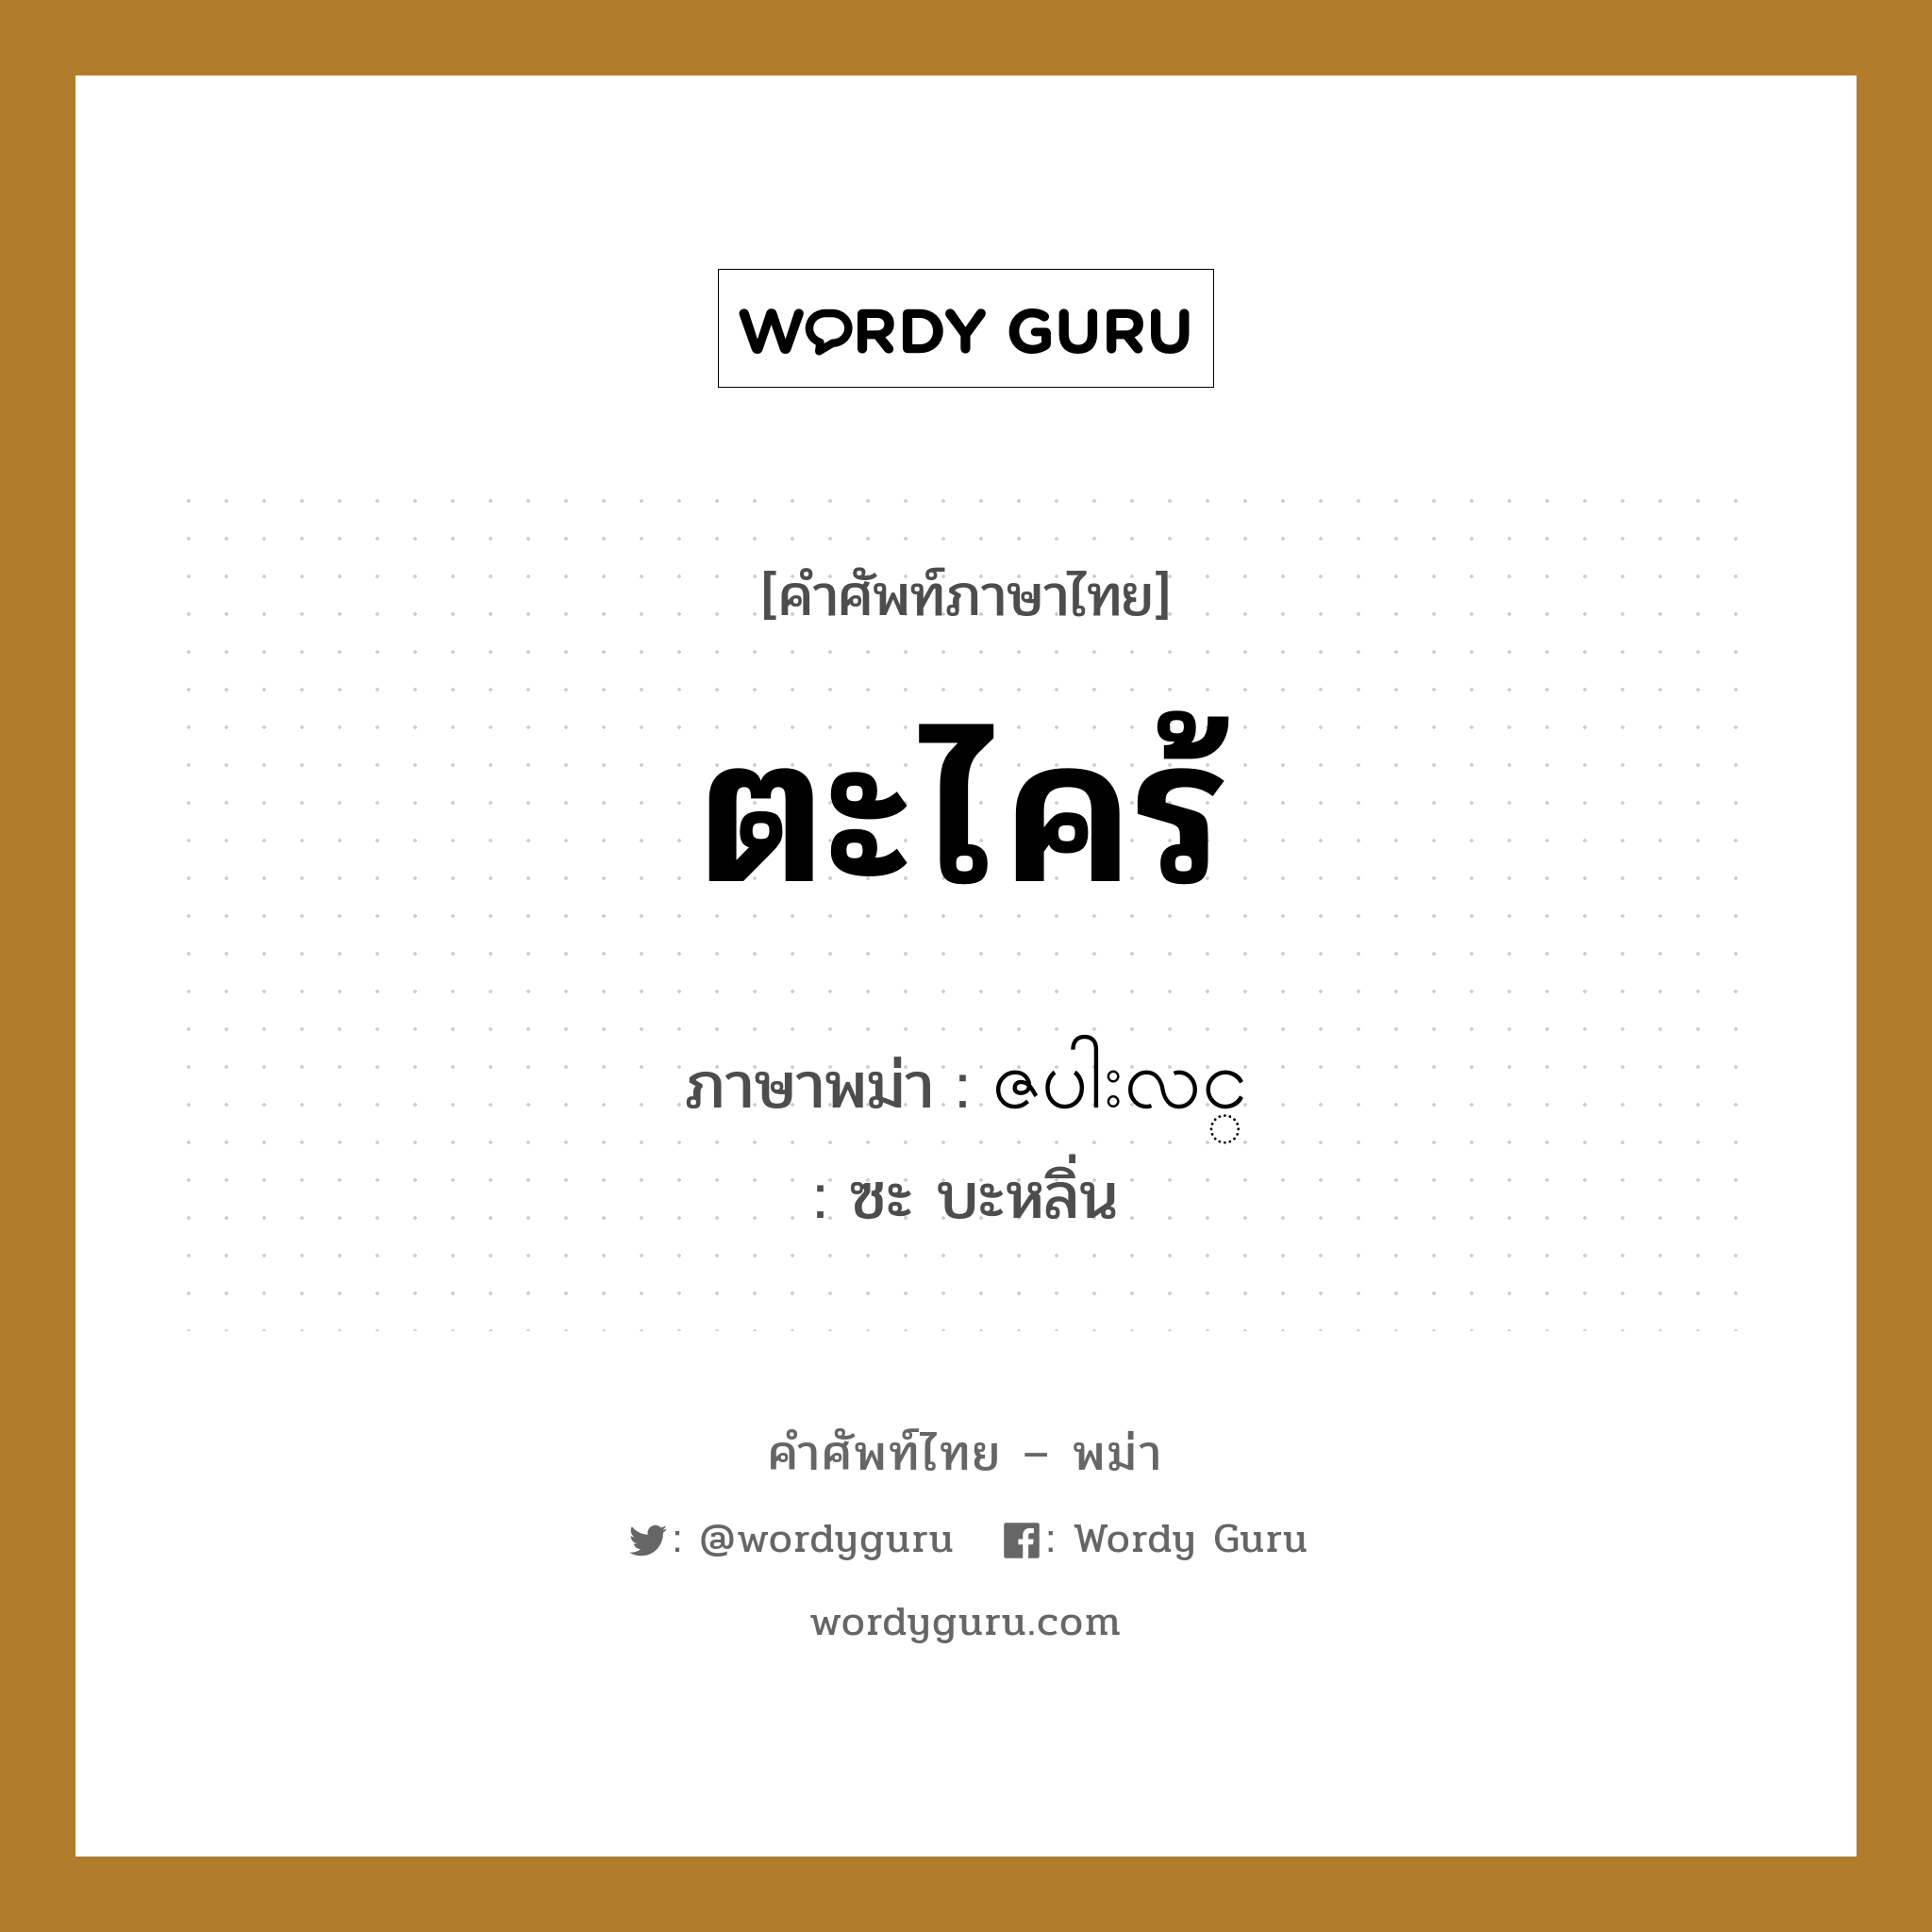 ตะไคร้ ภาษาพม่าคืออะไร, คำศัพท์ภาษาไทย - พม่า ตะไคร้ ภาษาพม่า ဇပါးလင္ หมวด ผักและผลไม้ ซะ บะหลิ่น หมวด ผักและผลไม้